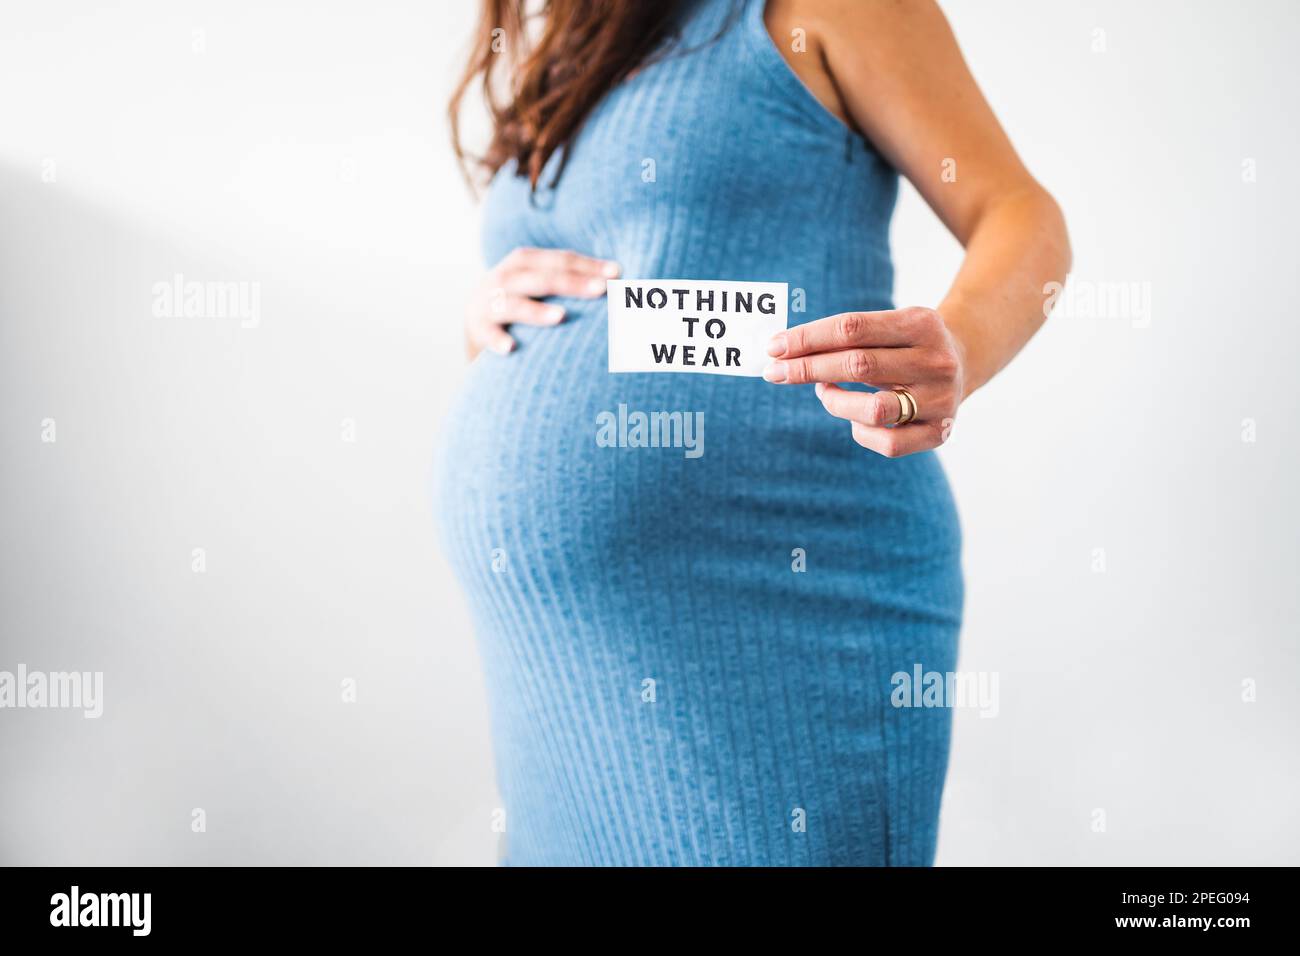 No hay nada que llevar signo sostenido por la mujer embarazada en el último  mes de embarazo con vestido azul elástico que muestra su bulto, ropa de  maternidad e inclusivo Fotografía de